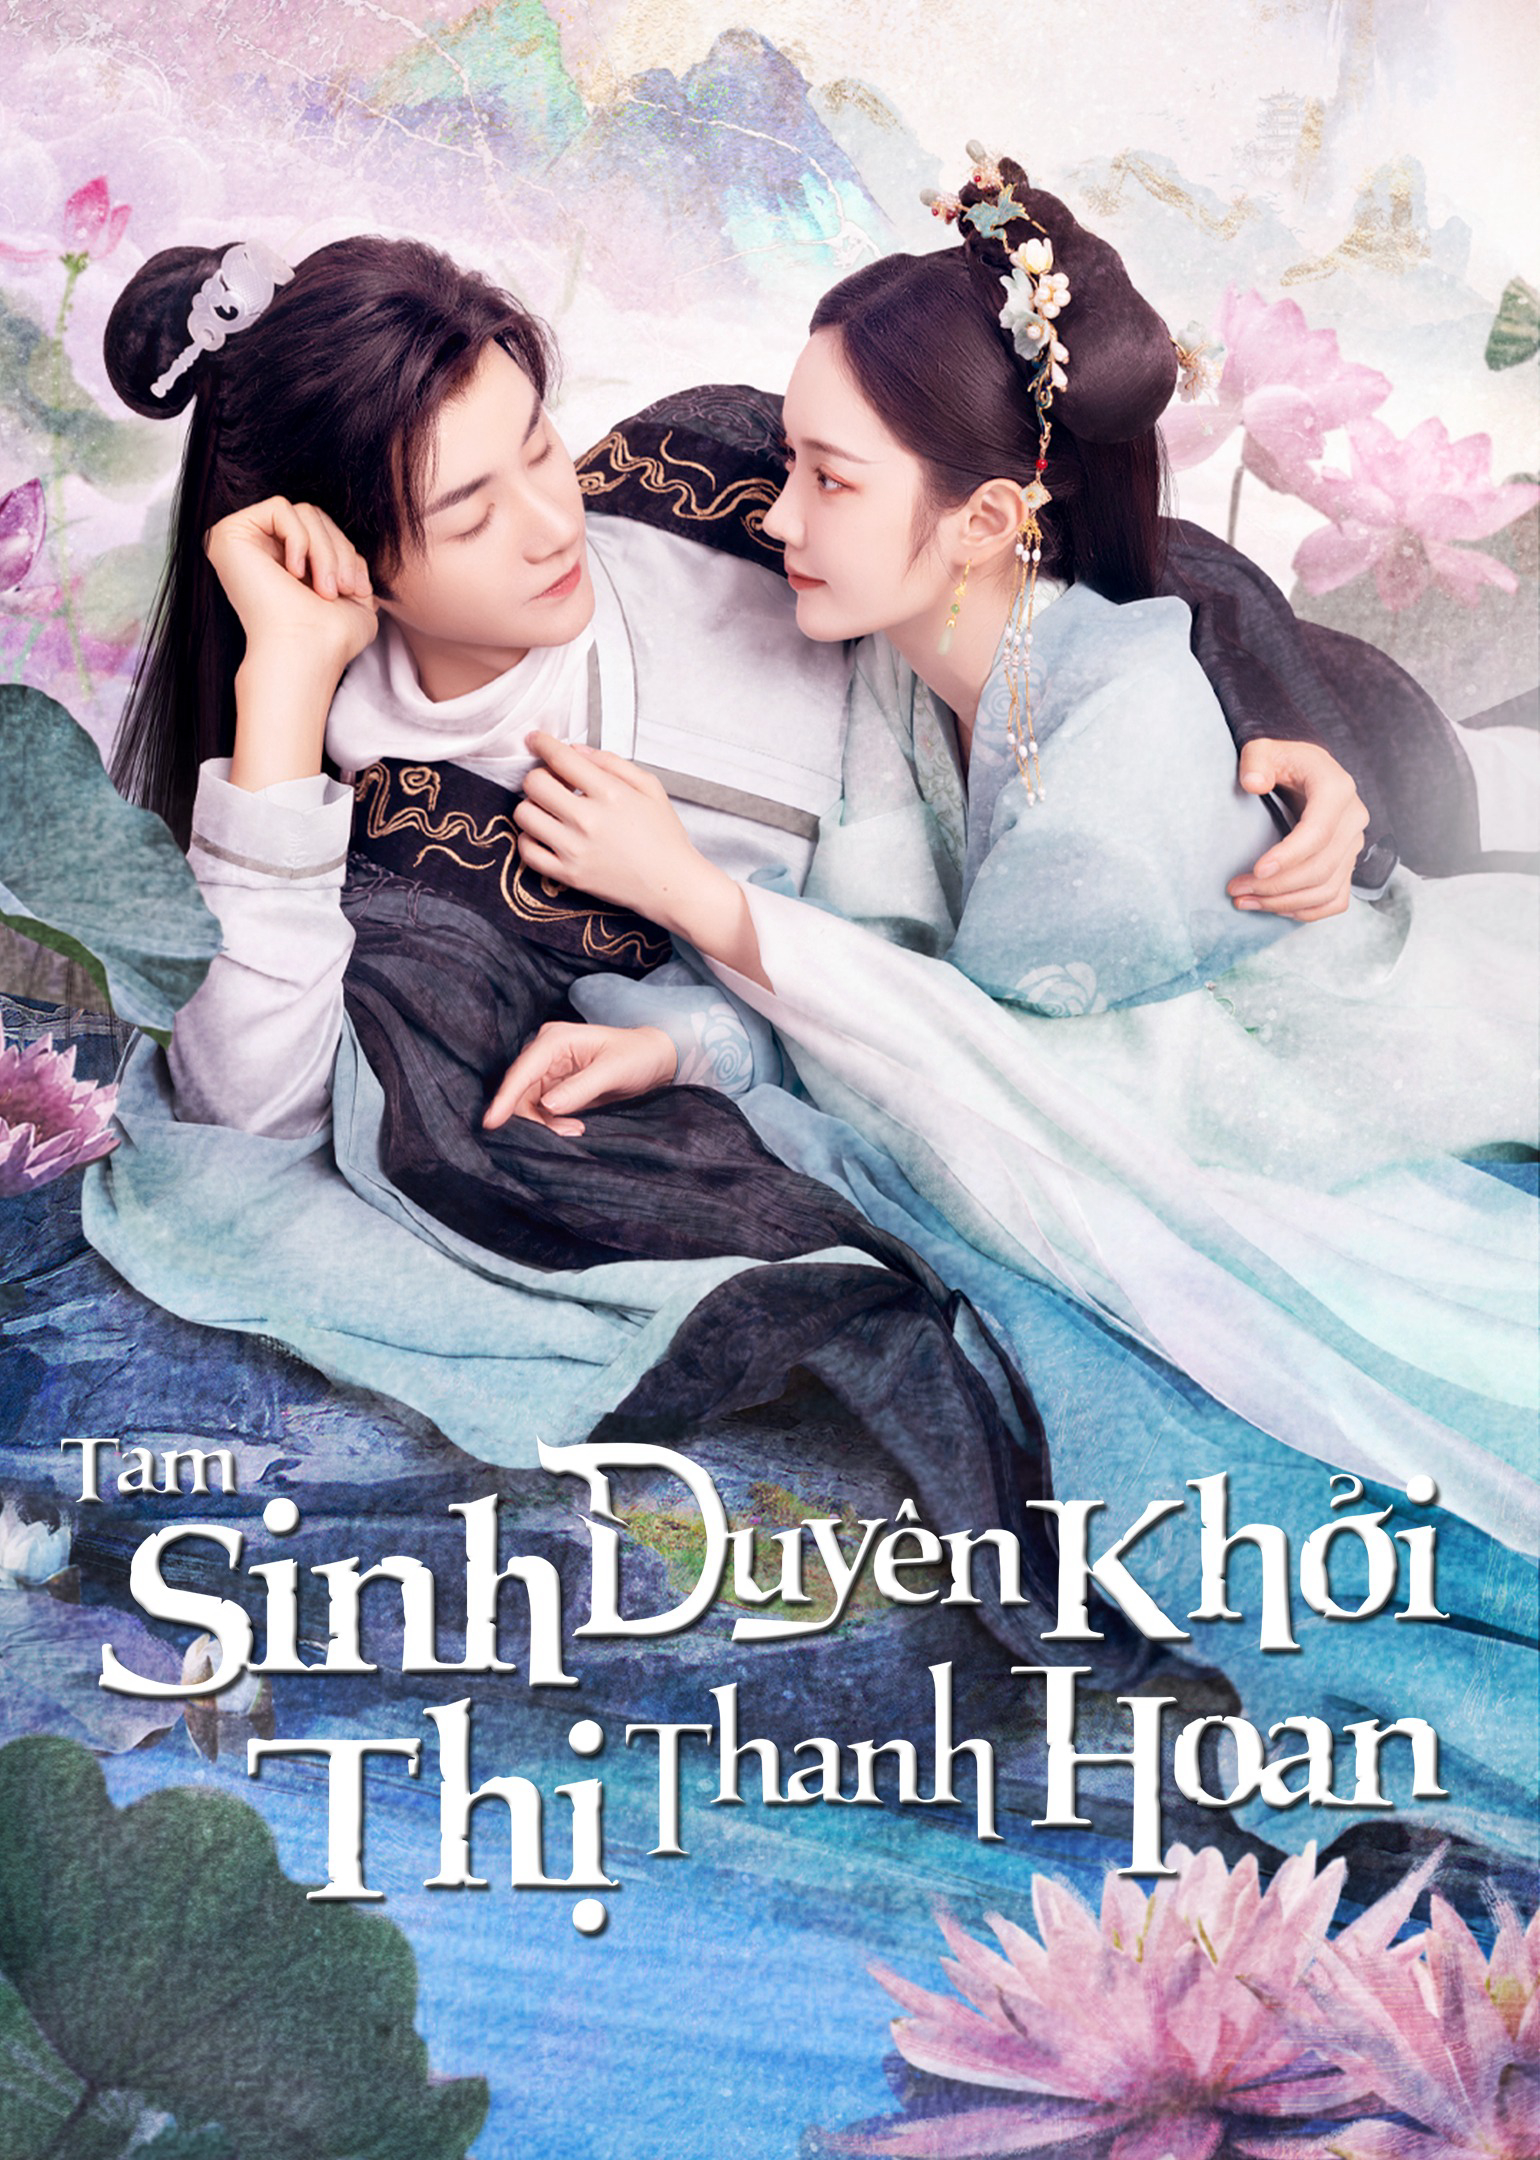 Poster Phim Tam Sinh Duyên Khởi Thị Thanh Hoan  (The Origin of Eternity)